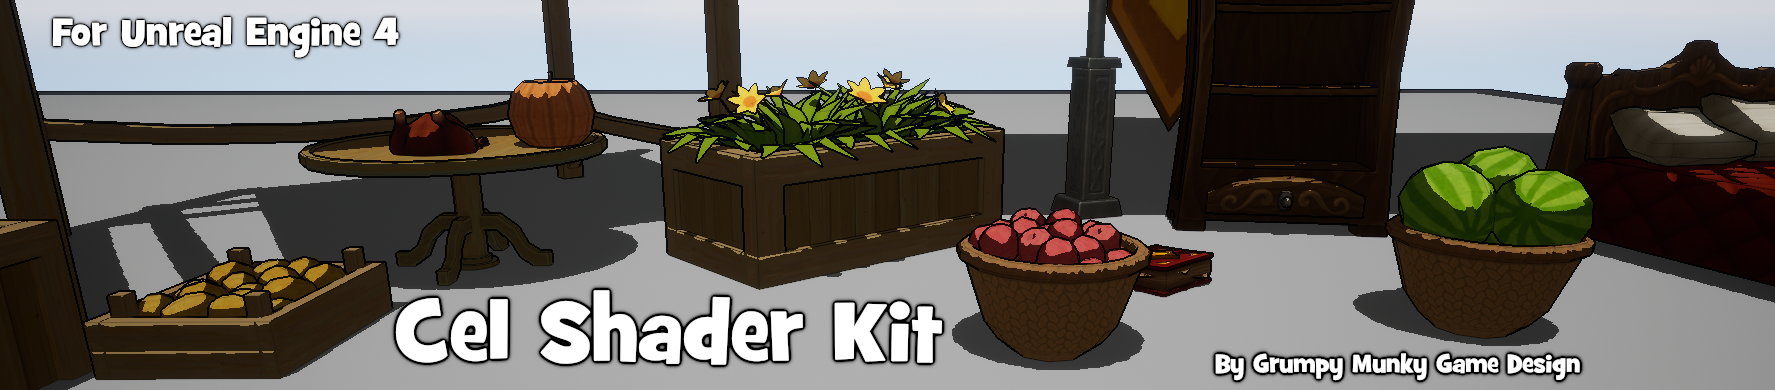 Cel Shader Starter Kit - Unreal Engine 4